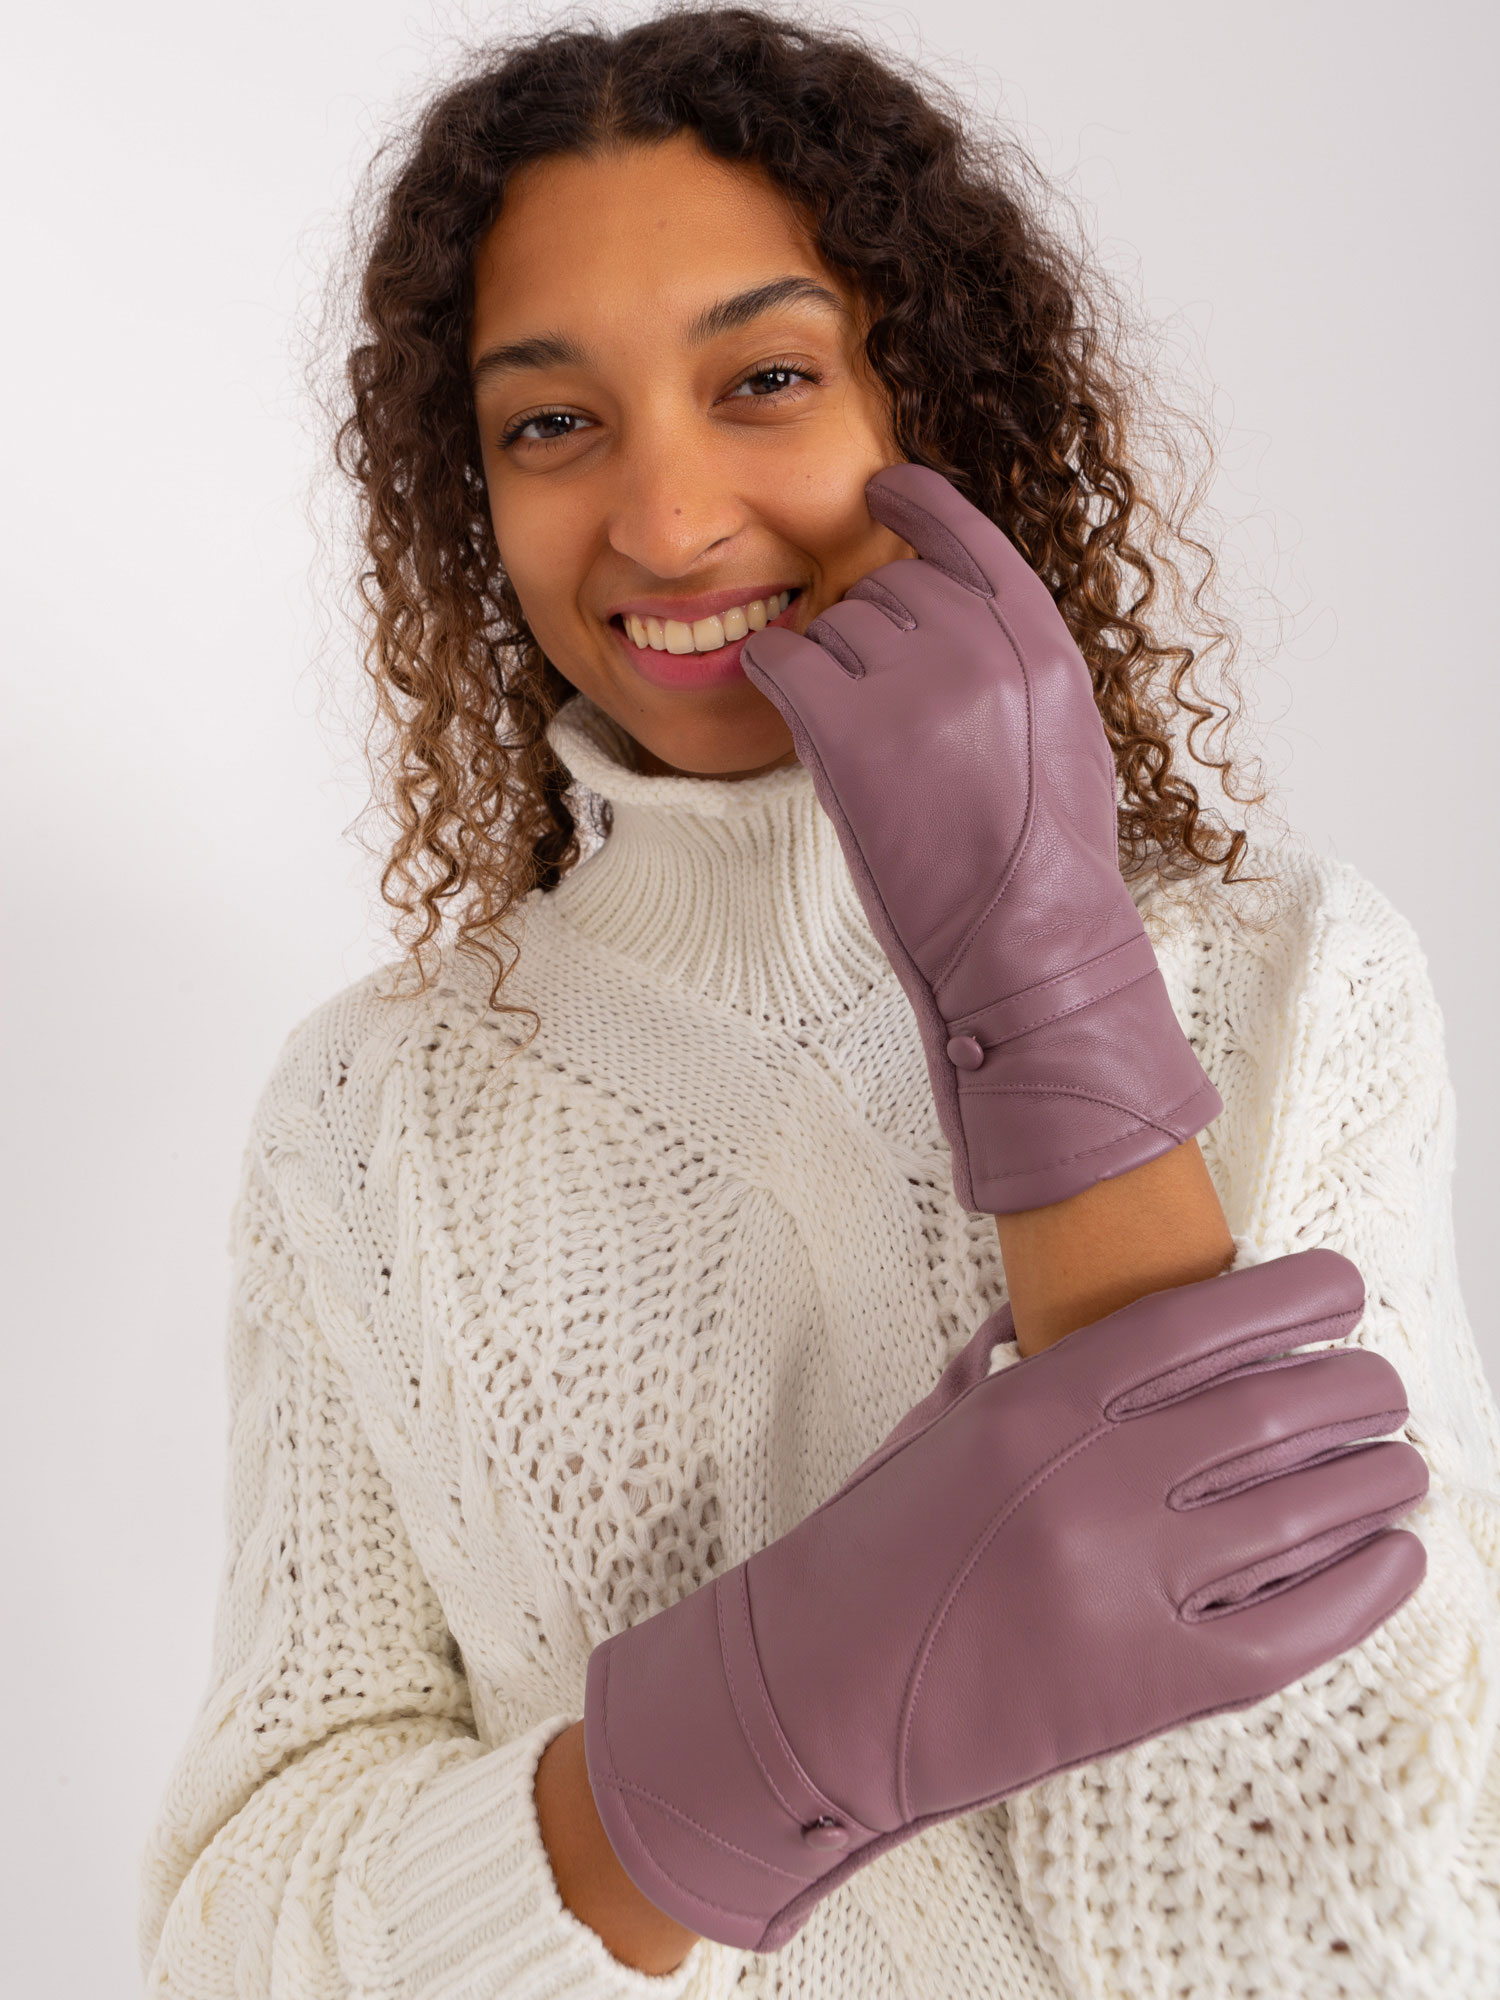 Fialové koženkové rukavice -AT-RK-239802.28-purple Velikost: S/M